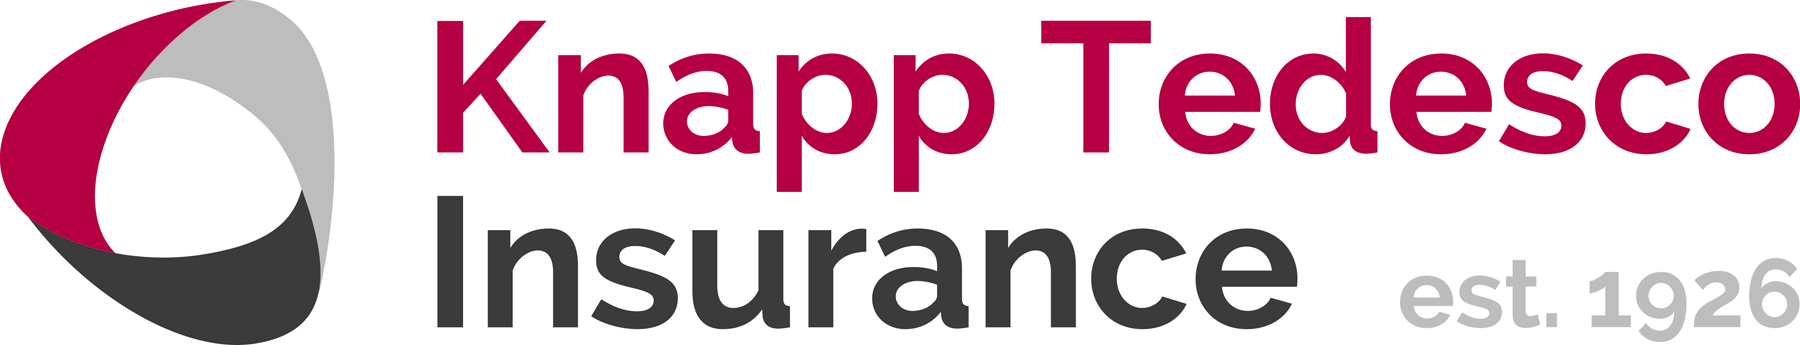 Knapp Tedesco Insurance / AssuredPartners